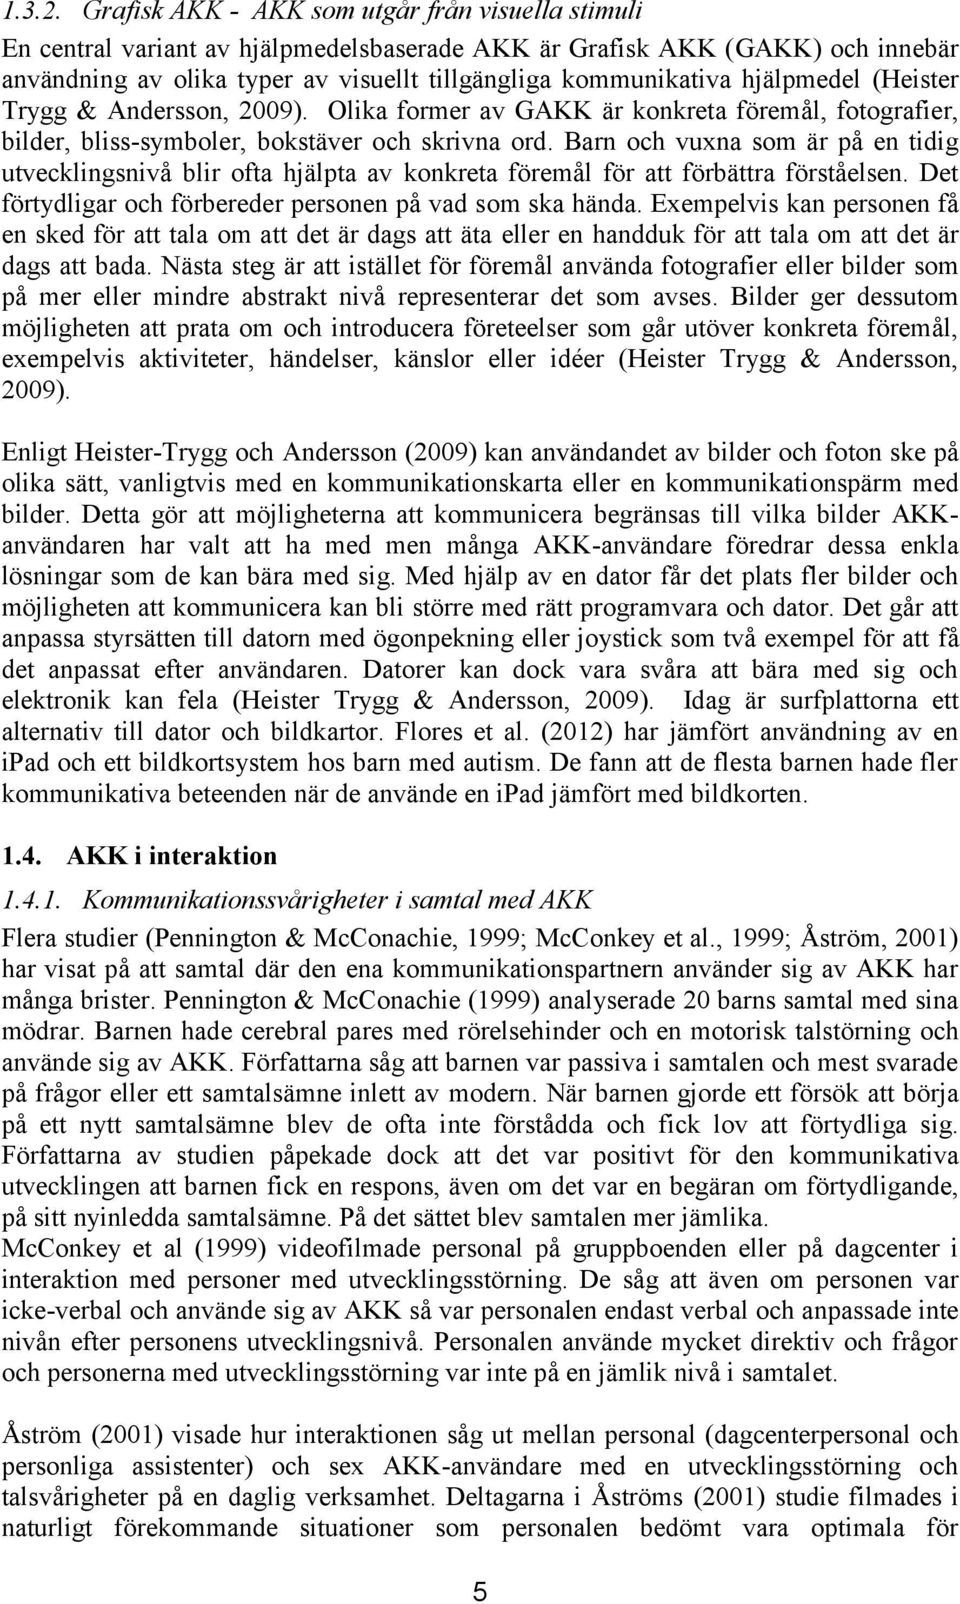 hjälpmedel (Heister Trygg & Andersson, 2009). Olika former av GAKK är konkreta föremål, fotografier, bilder, bliss-symboler, bokstäver och skrivna ord.